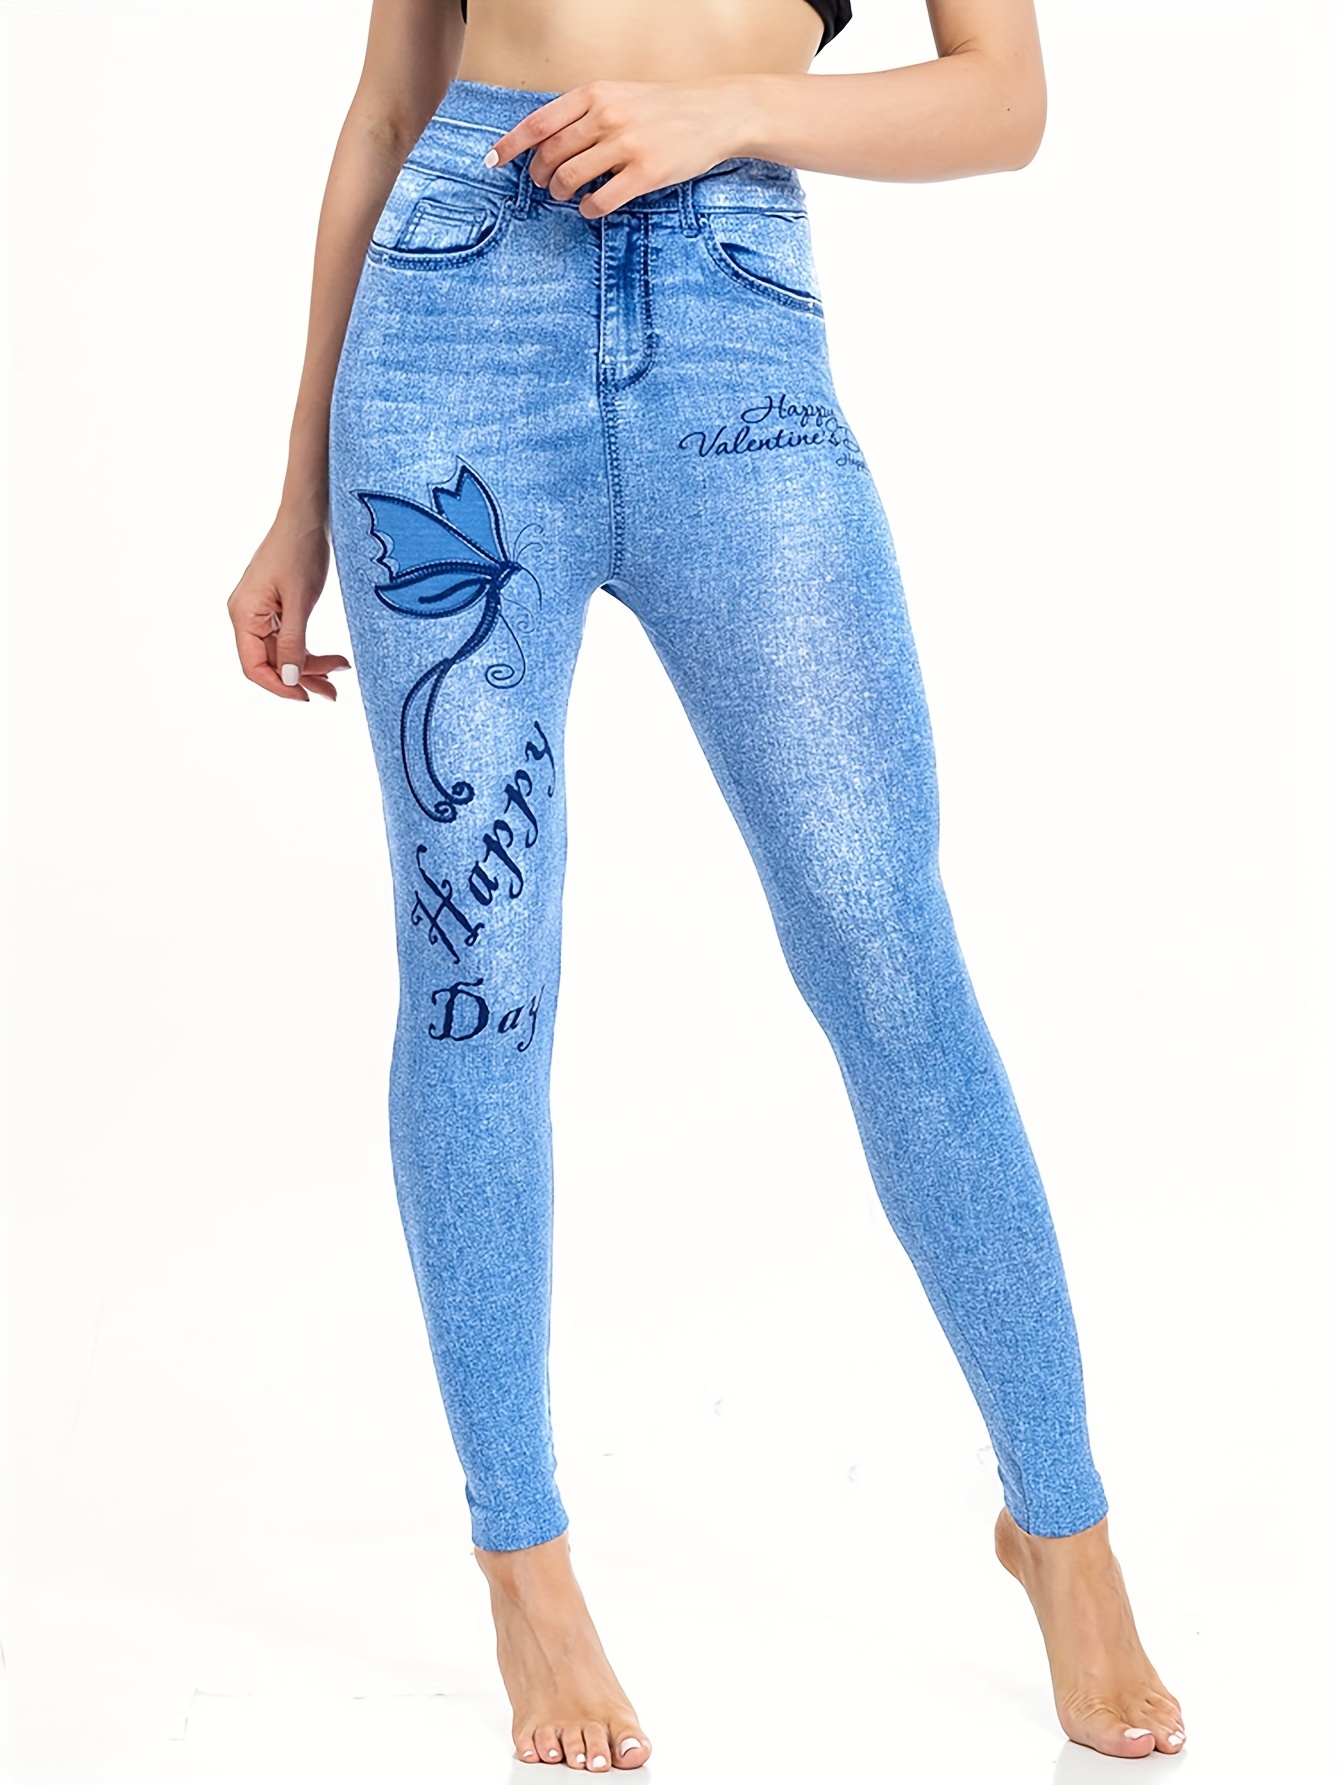 2015 hot selling women's printed slim high elastic jeggings fake jeans –  Essish